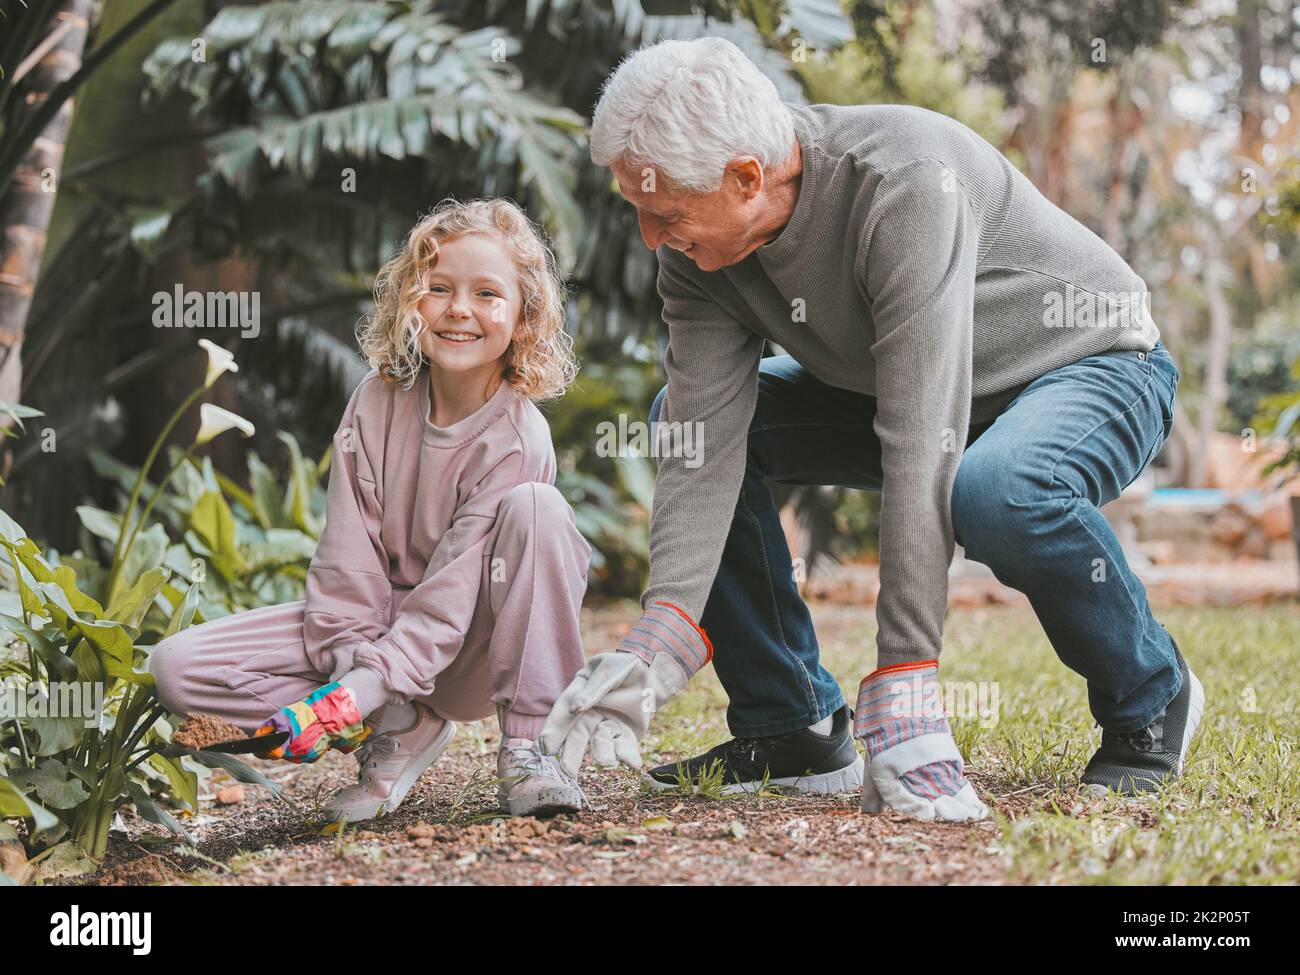 Großvater kennt die besten Gartengeheimnisse. Aufnahme eines entzückenden kleinen Mädchens, das mit ihrem Großvater im Garten arbeitet. Stockfoto